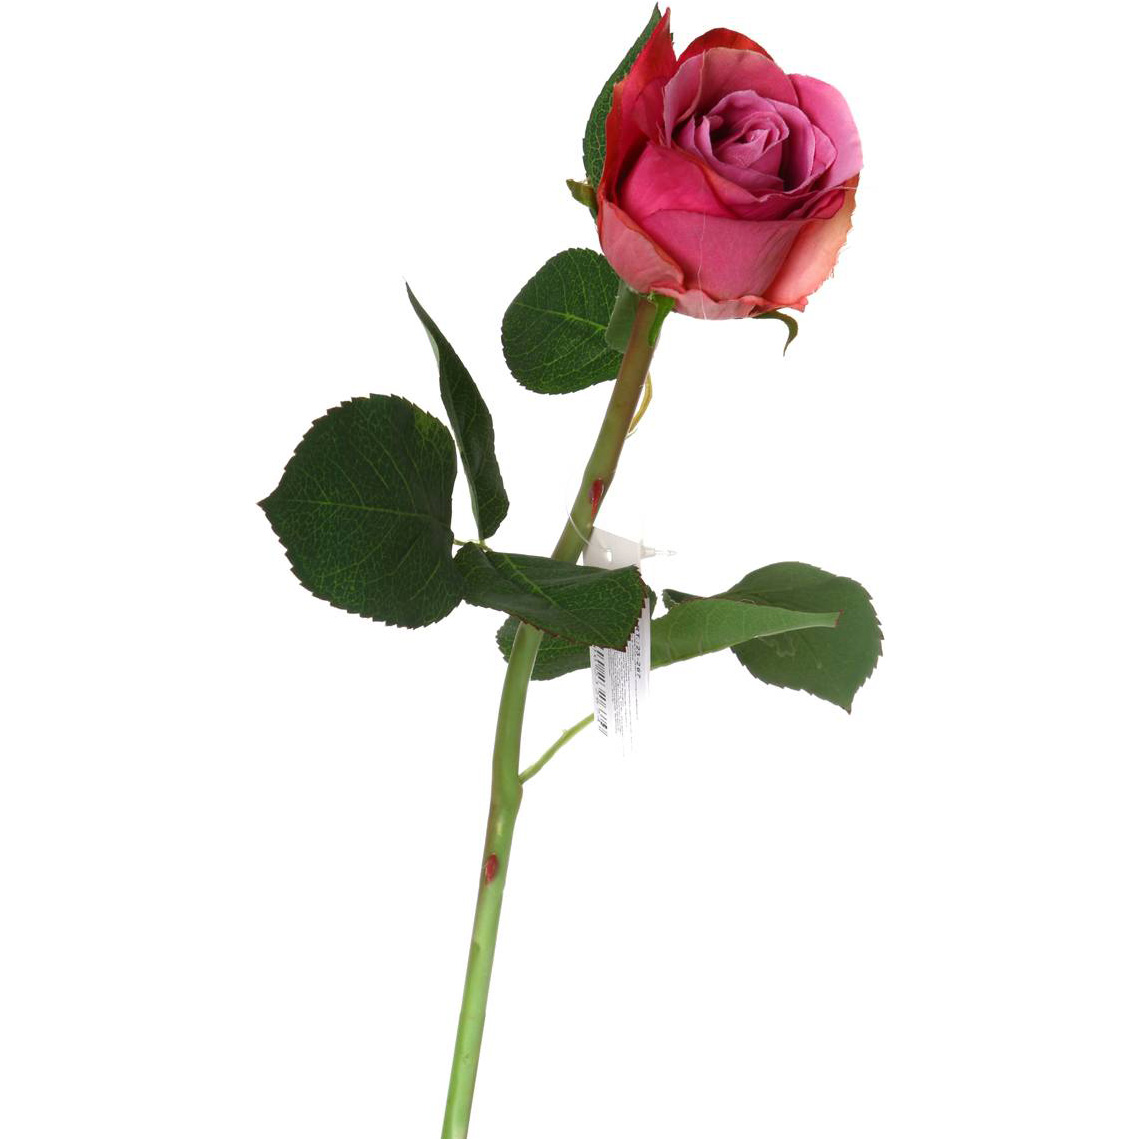 Цветок Роза (50 см), размер 50 см lfr956580 Цветок Роза (50 см) - фото 1